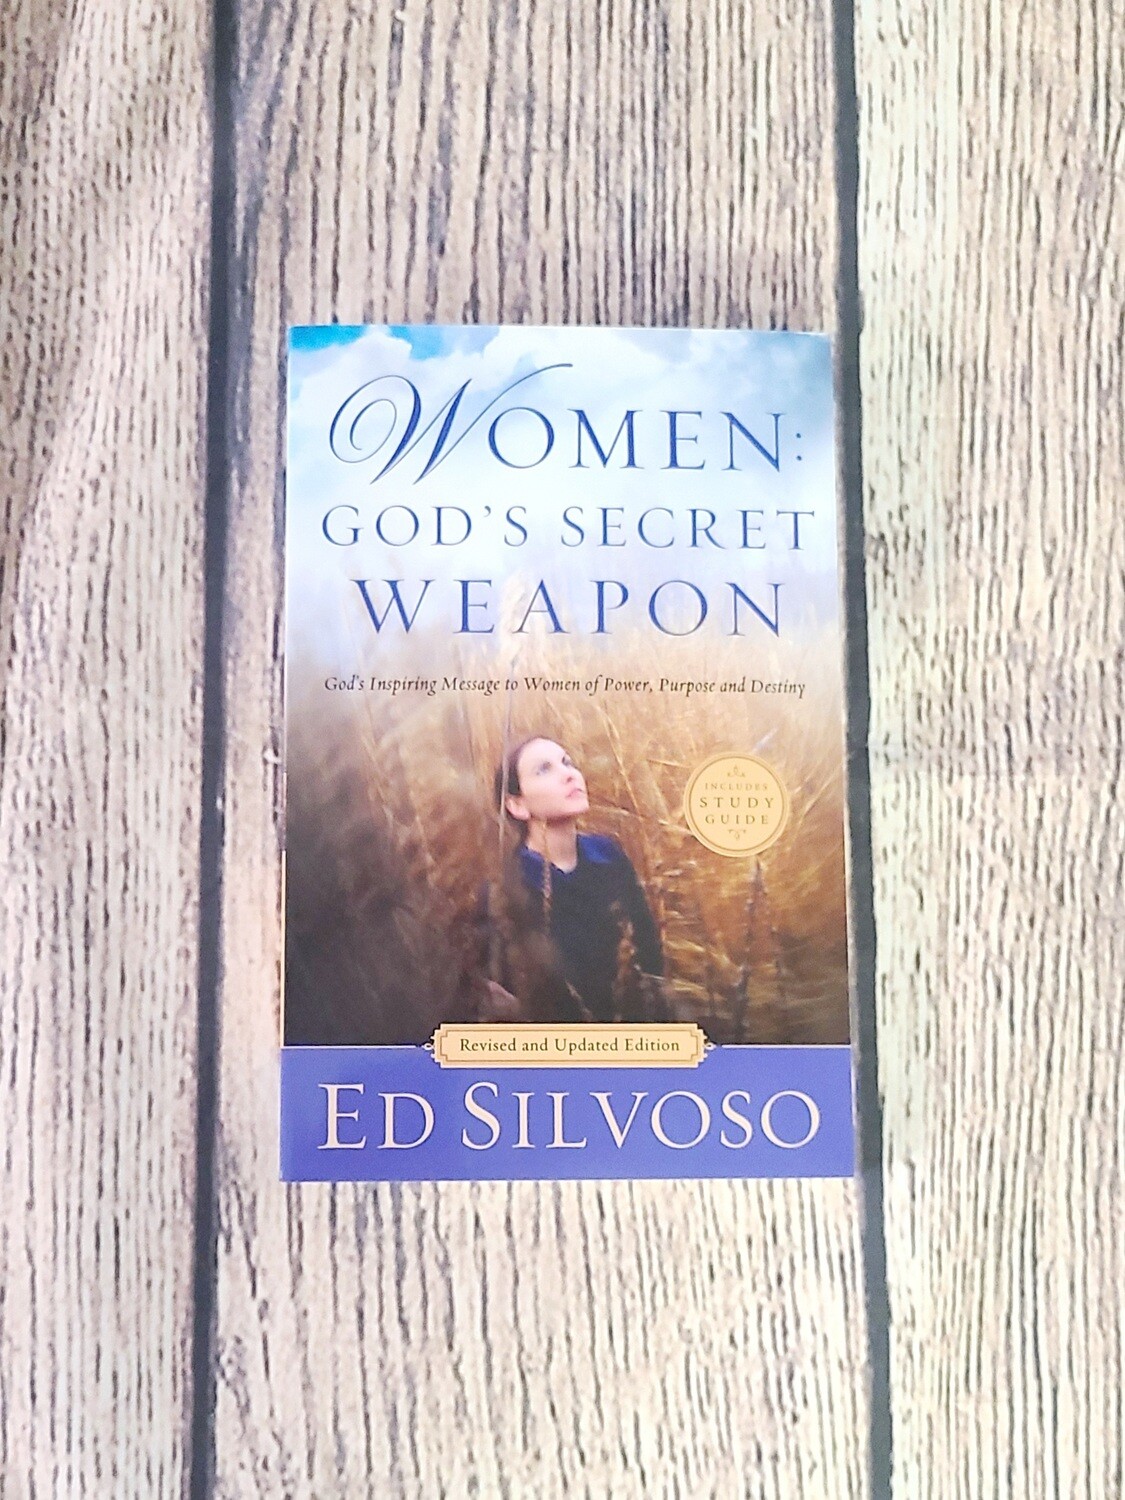 Women: God's Secret Weapon by Ed Silvoso